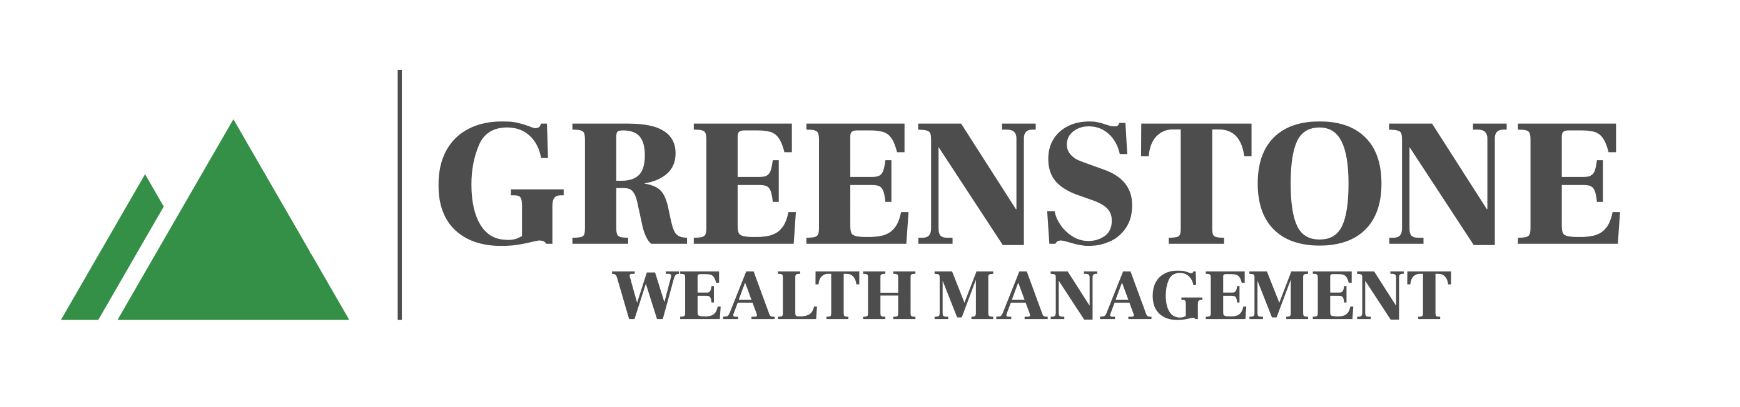 Greenstone Wealth Management